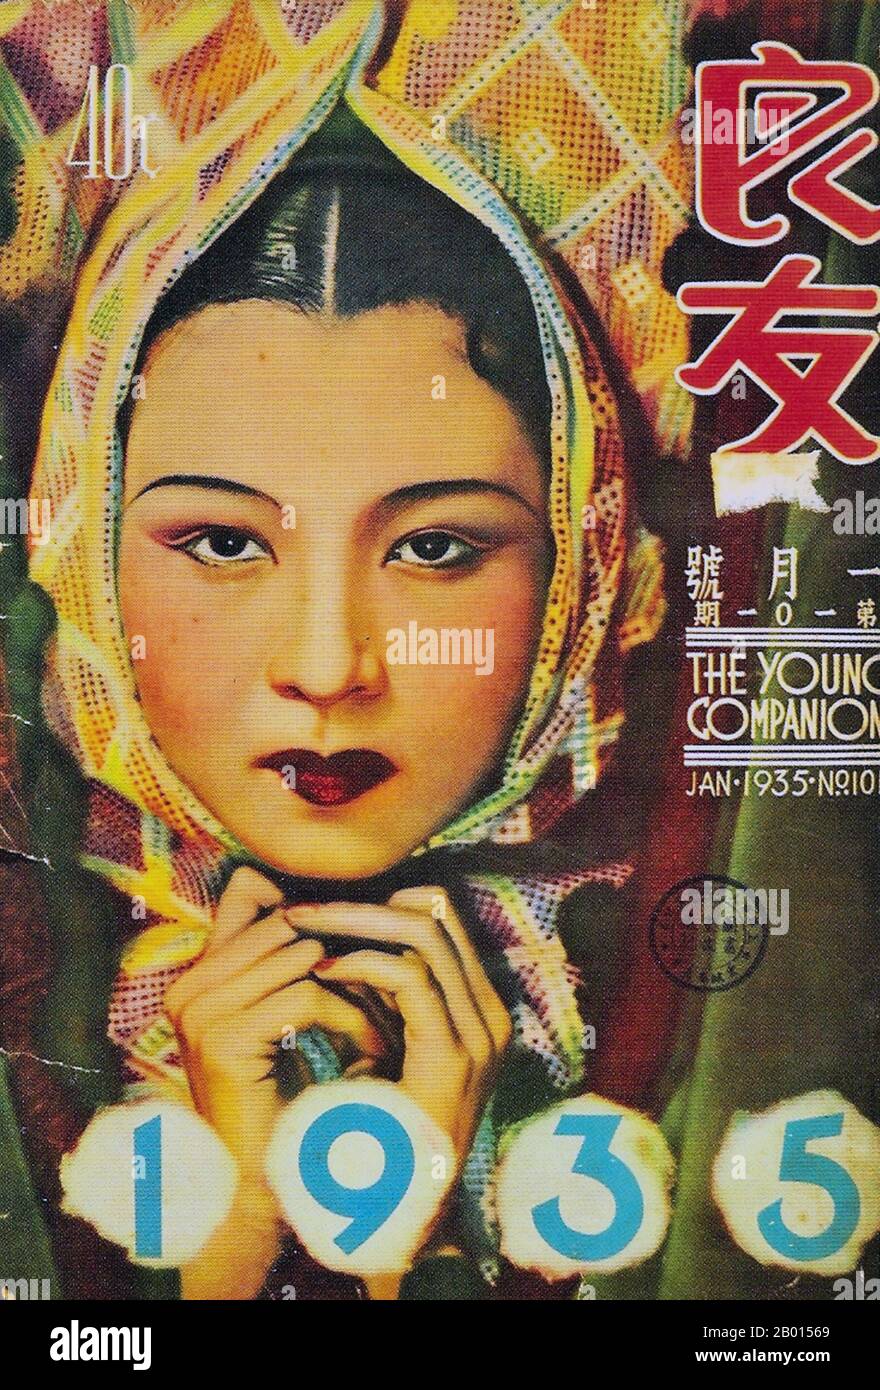 China: Cover von „The Young Companion“, Januar 1935. 1926 wurde Young Companion Pictorial (Liang You, wörtlich „guter Freund“) in Shanghai als erstes buntes Varieté-Magazin gegründet. In den 1920er und 30er Jahren, als gedruckte Nachrichten selten und kostbar waren, war Companion bereits ein Pionier bei der Bereitstellung von Bildberichten an die Öffentlichkeit. Es wurde schnell zu der Publikation, die Chinas Leidenschaft für die kommenden Jahrzehnte chronisch aufzeichnet und provoziert hat. Während des Epos von Krieg und Frieden konnten die Leser die Gesichter und Gedanken einflussreicher Politiker sehen und von Companion lesen. Stockfoto